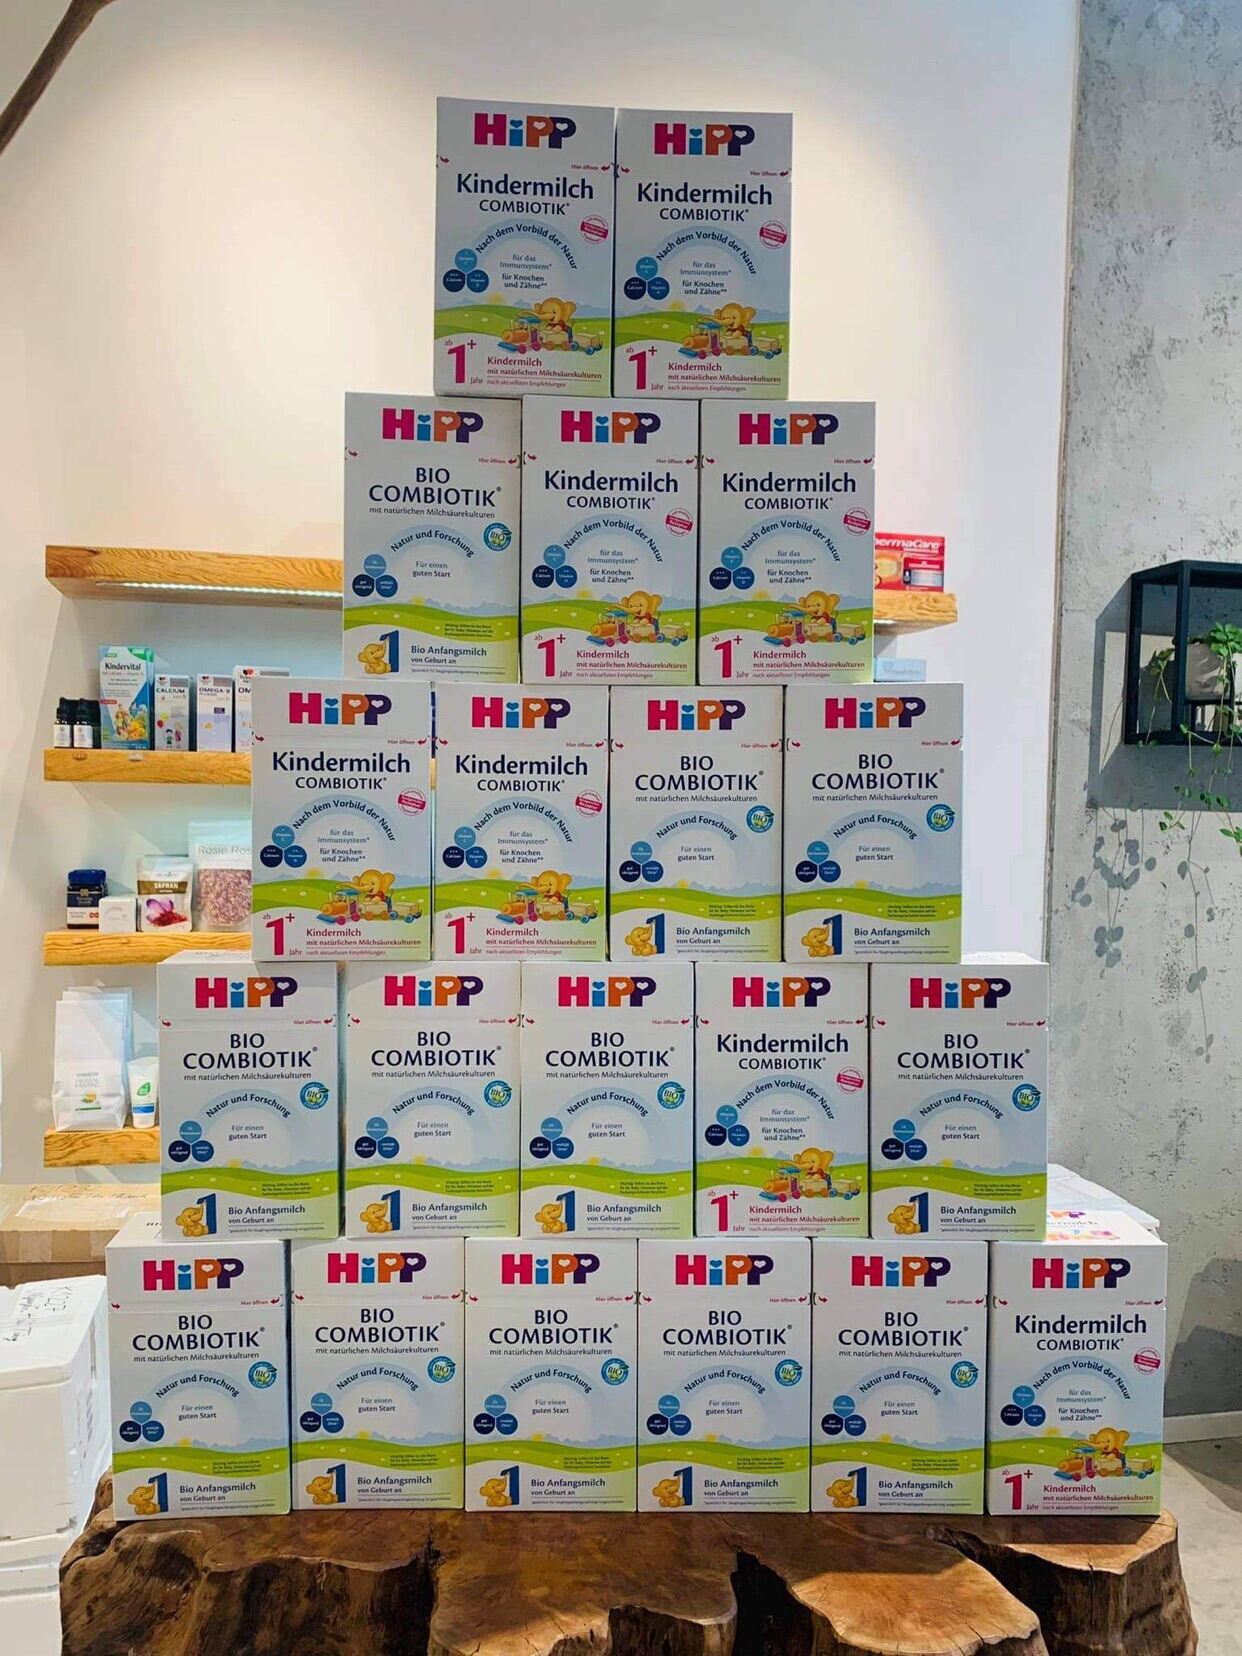 Sữa Hipp combiotik nội địa Đức 600g